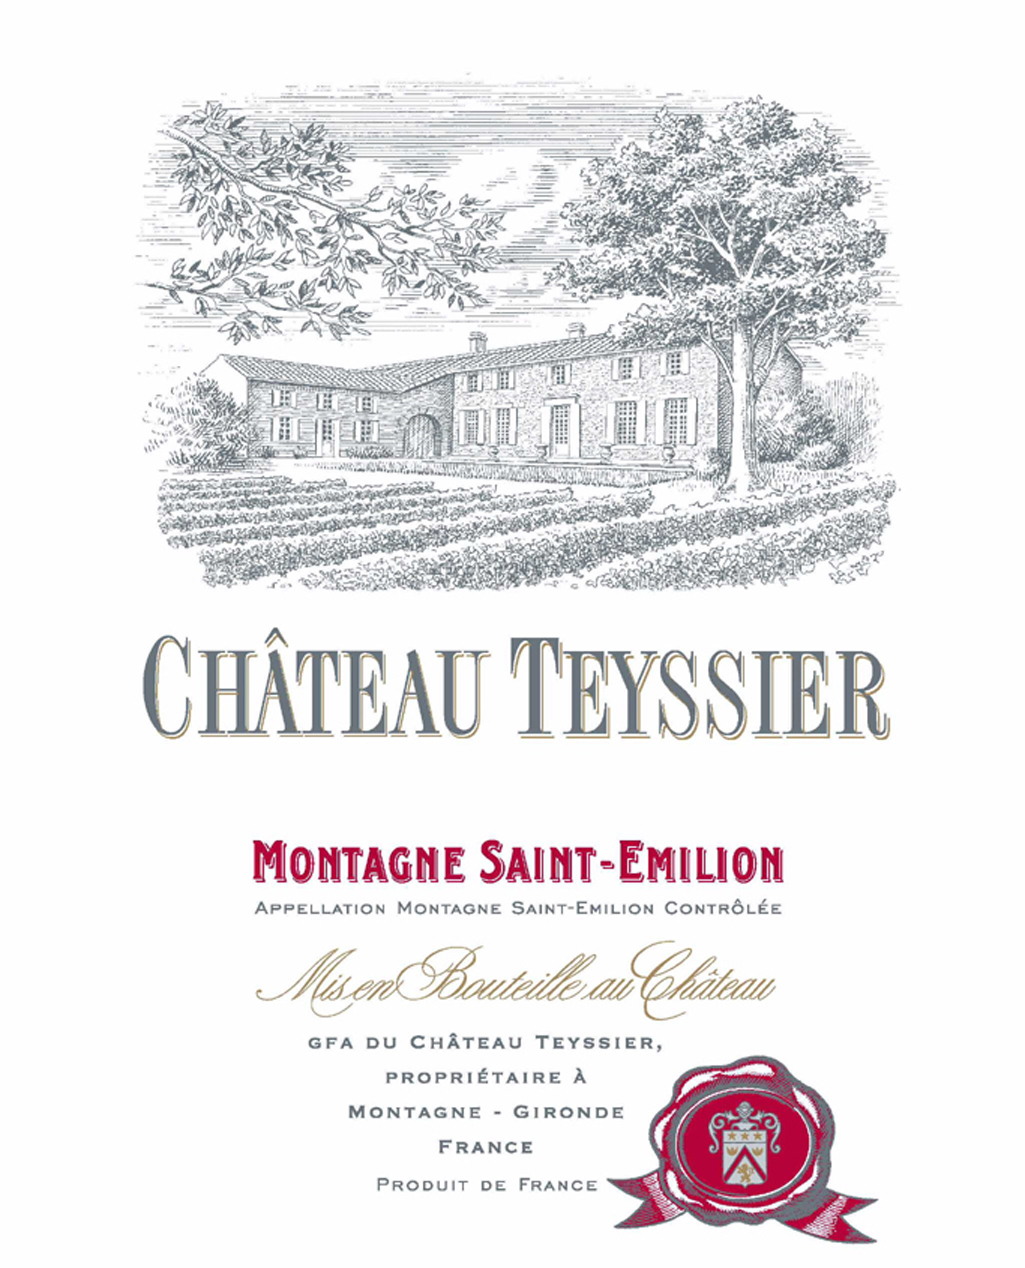 Chateau Teyssier - Montagne Saint Emilion label